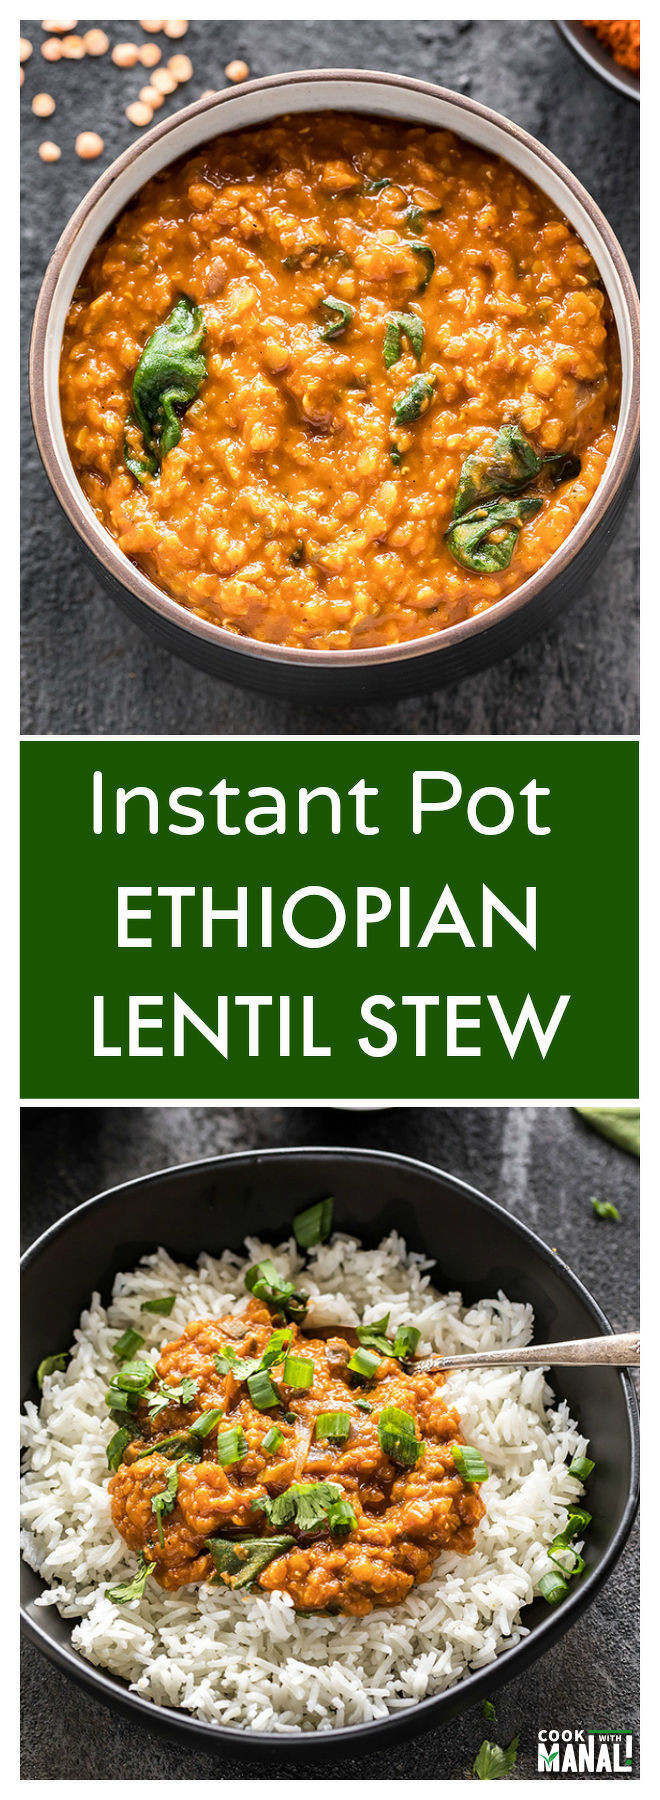 Lentil Stew Instant Pot
 Instant Pot Ethiopian Lentil Stew Cook With Manali